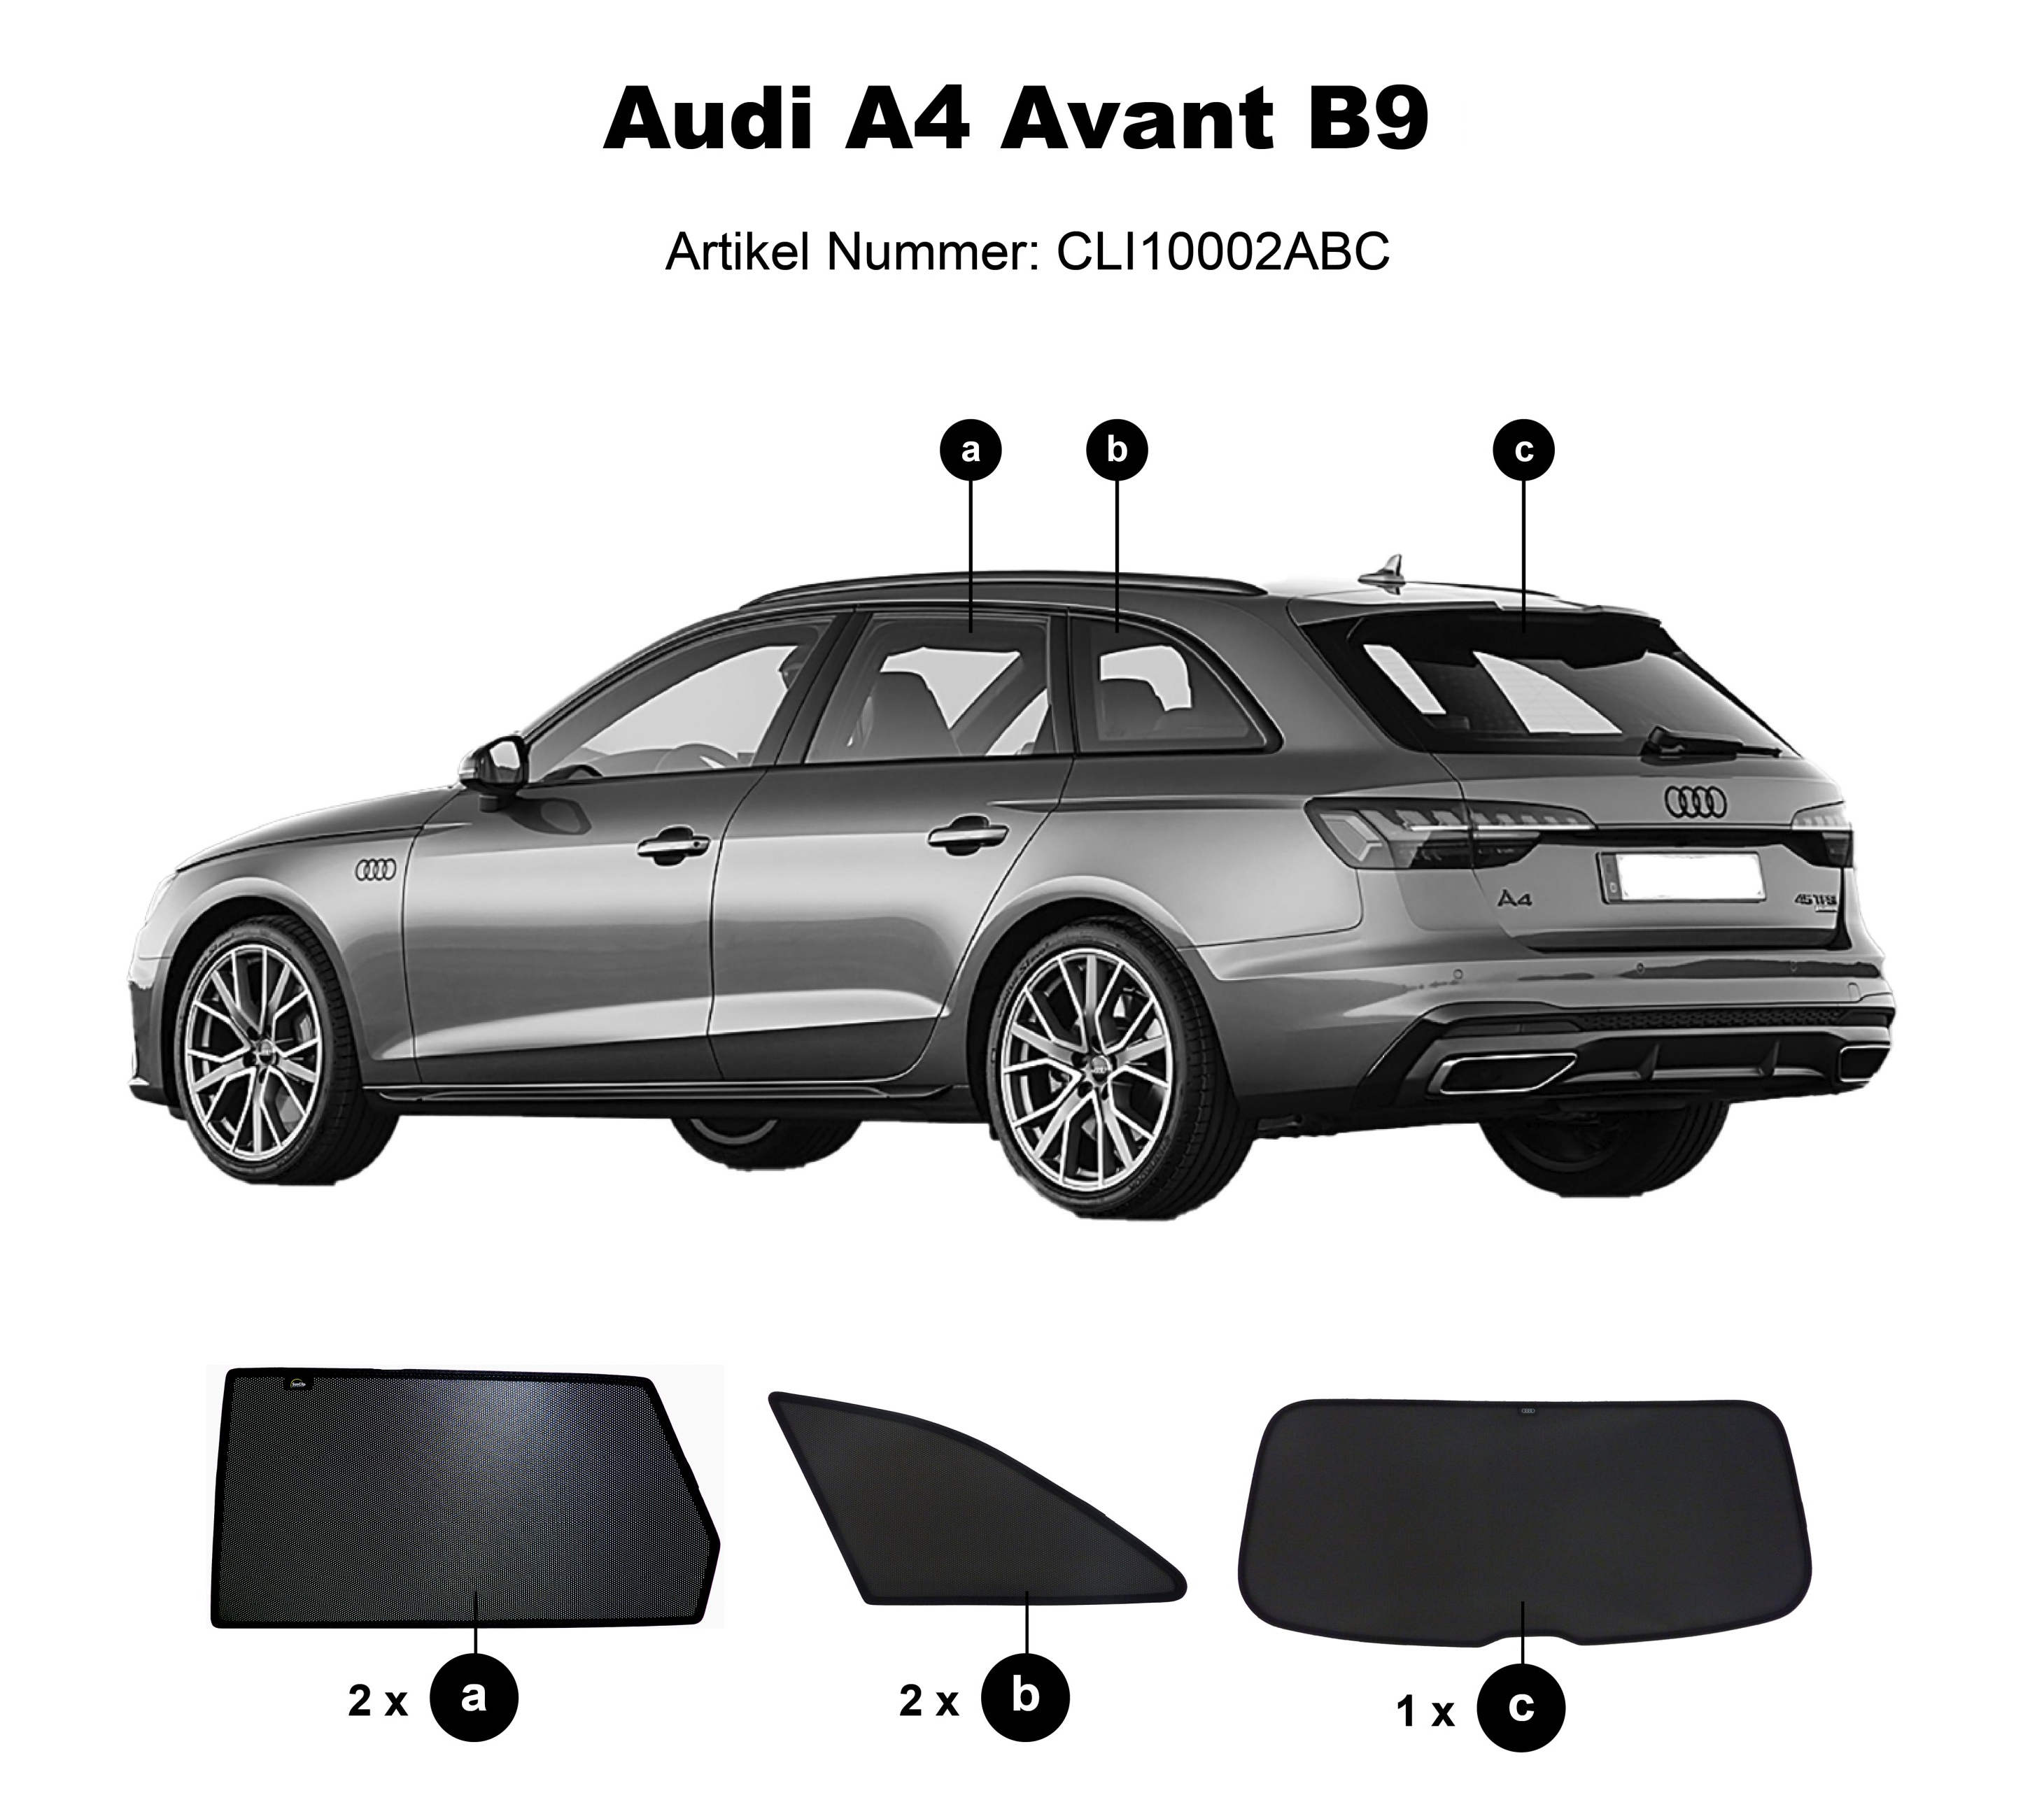 https://www.sonnenschutz-pkw.de/images/product_images/original_images/Audi-A4-Avant-B9-CLI10002ABC.png